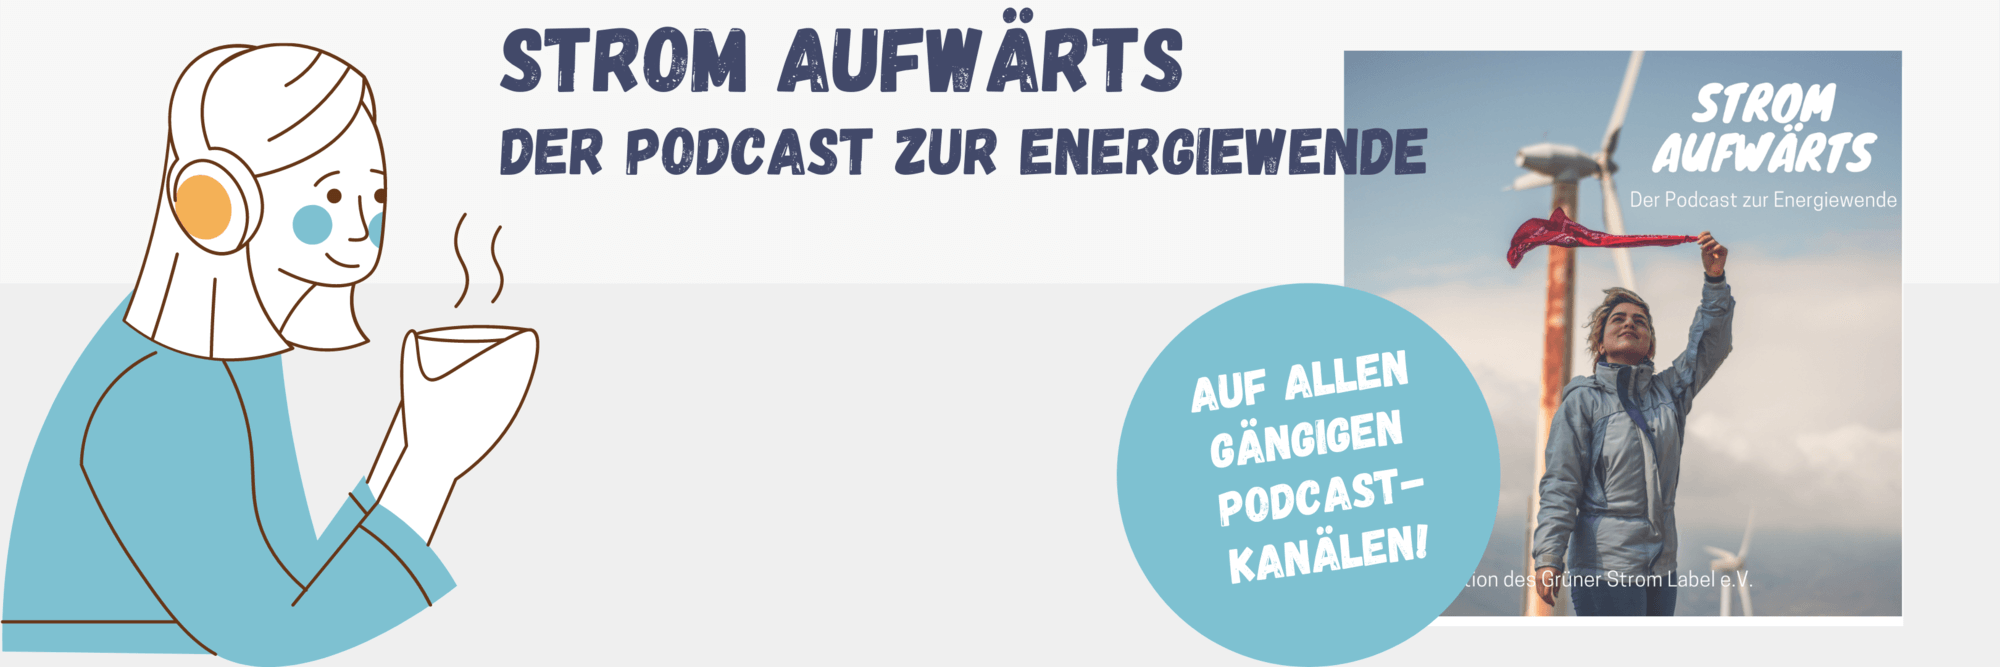 Titelbanner des Podcast von Gruener Strom Label "Strom aufwaerts"